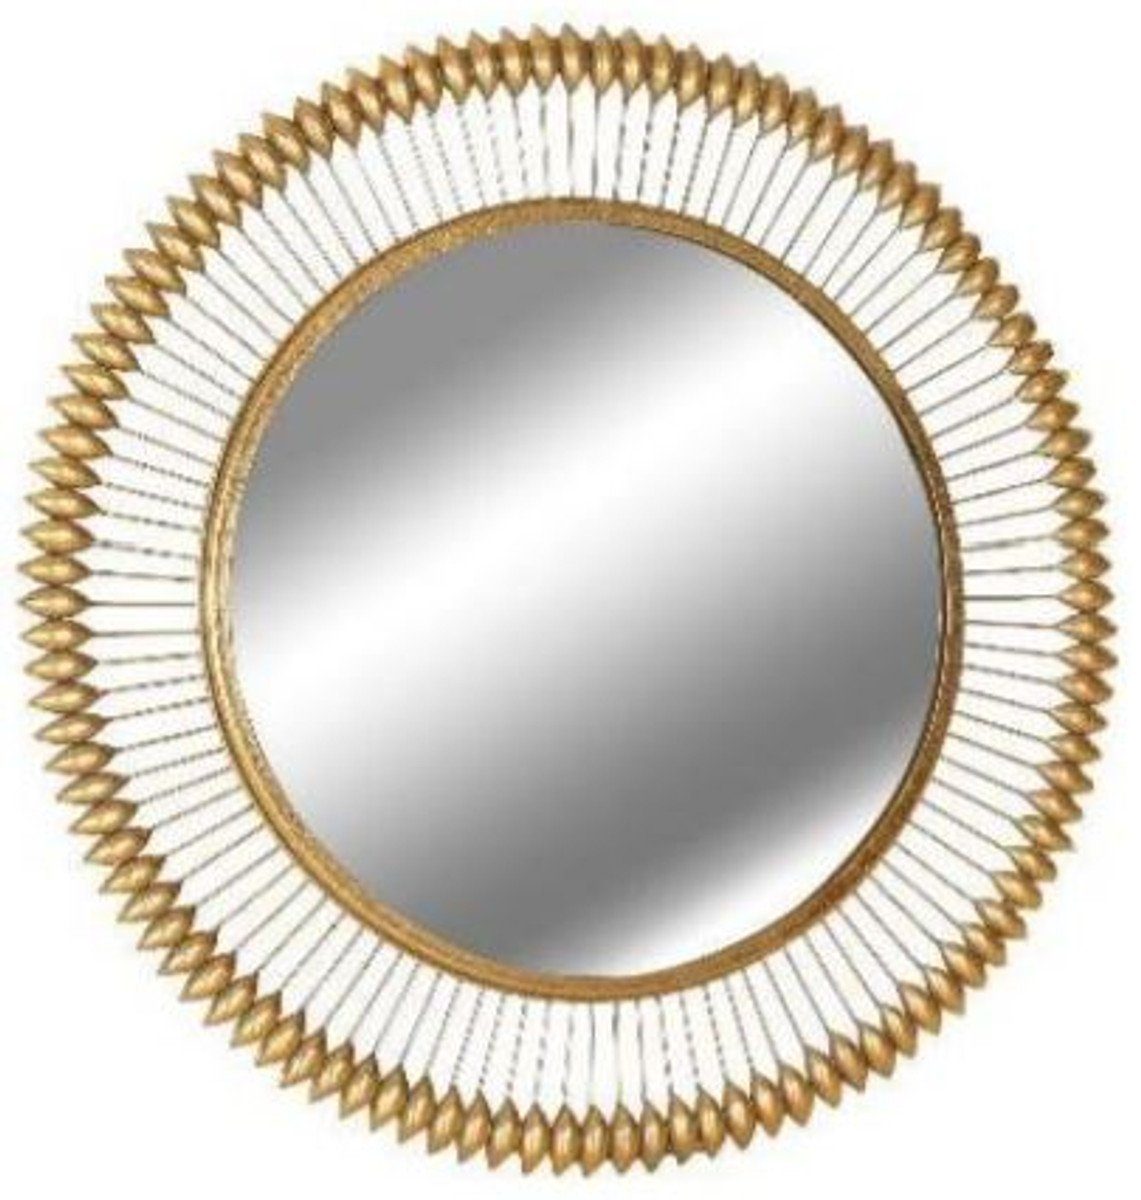 Casa Padrino Spiegel Designer Spiegel Gold Ø 90 cm - Moderner mit Goldfolie pulverbeschichteter Metall Wandspiegel - Luxus Deko Accessoires